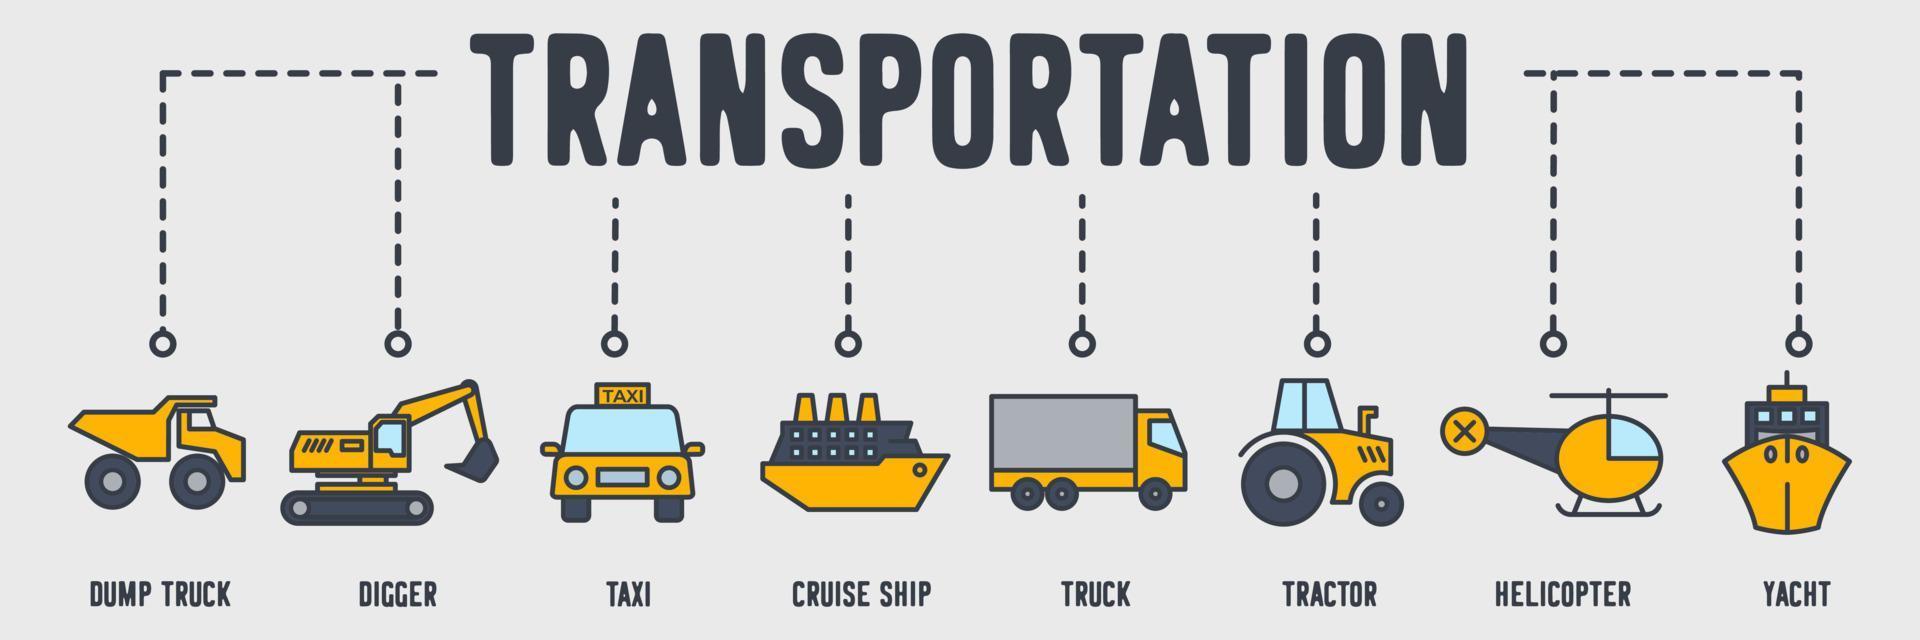 icône web de bannière de véhicule de transport. camion à benne basculante, tram, taxi, bateau de croisière, camion, tracteur, hélicoptère, yacht, concept d'illustration vectorielle de chariot élévateur. vecteur